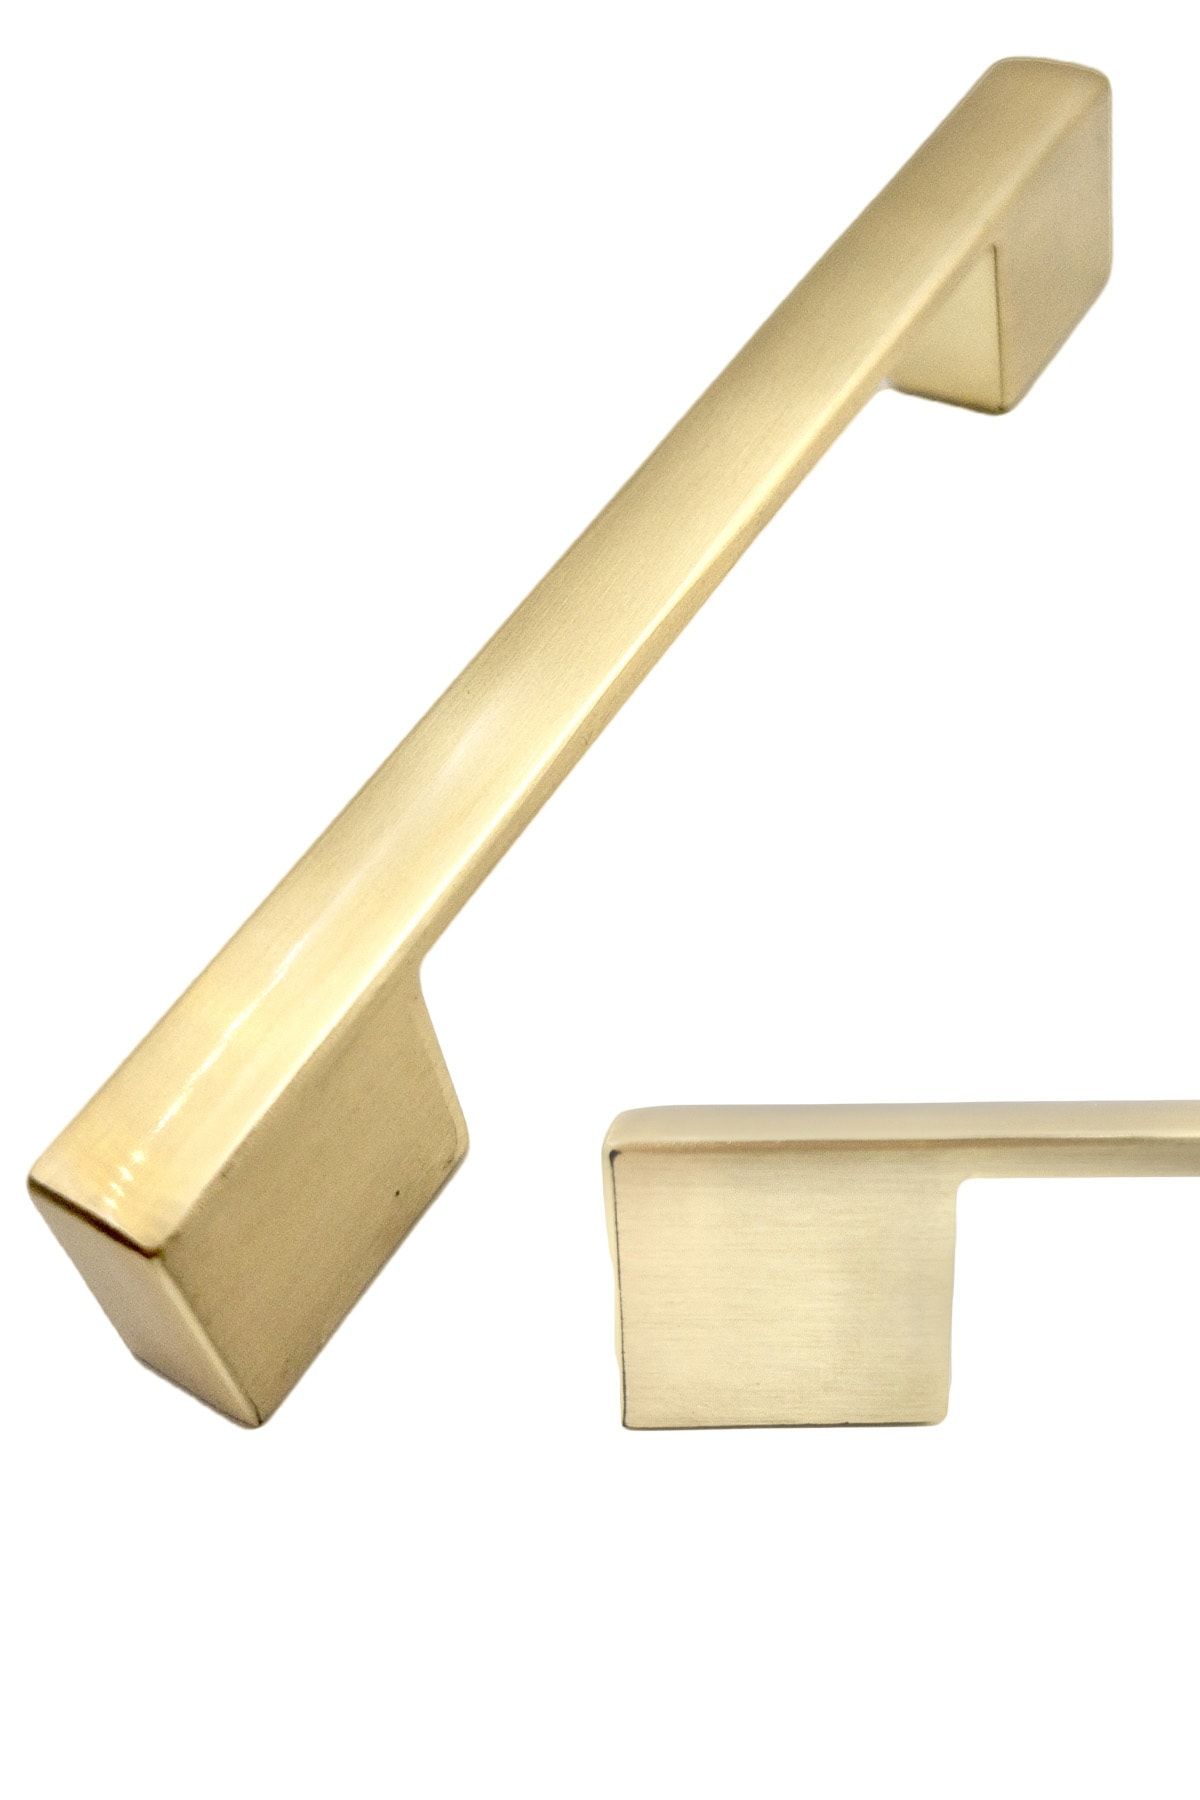 bablife Kale Nergis Köprü 96 mm-128 mm Mat Altın Metal Lüks Çekmece Dolap Mobilya Kulpları